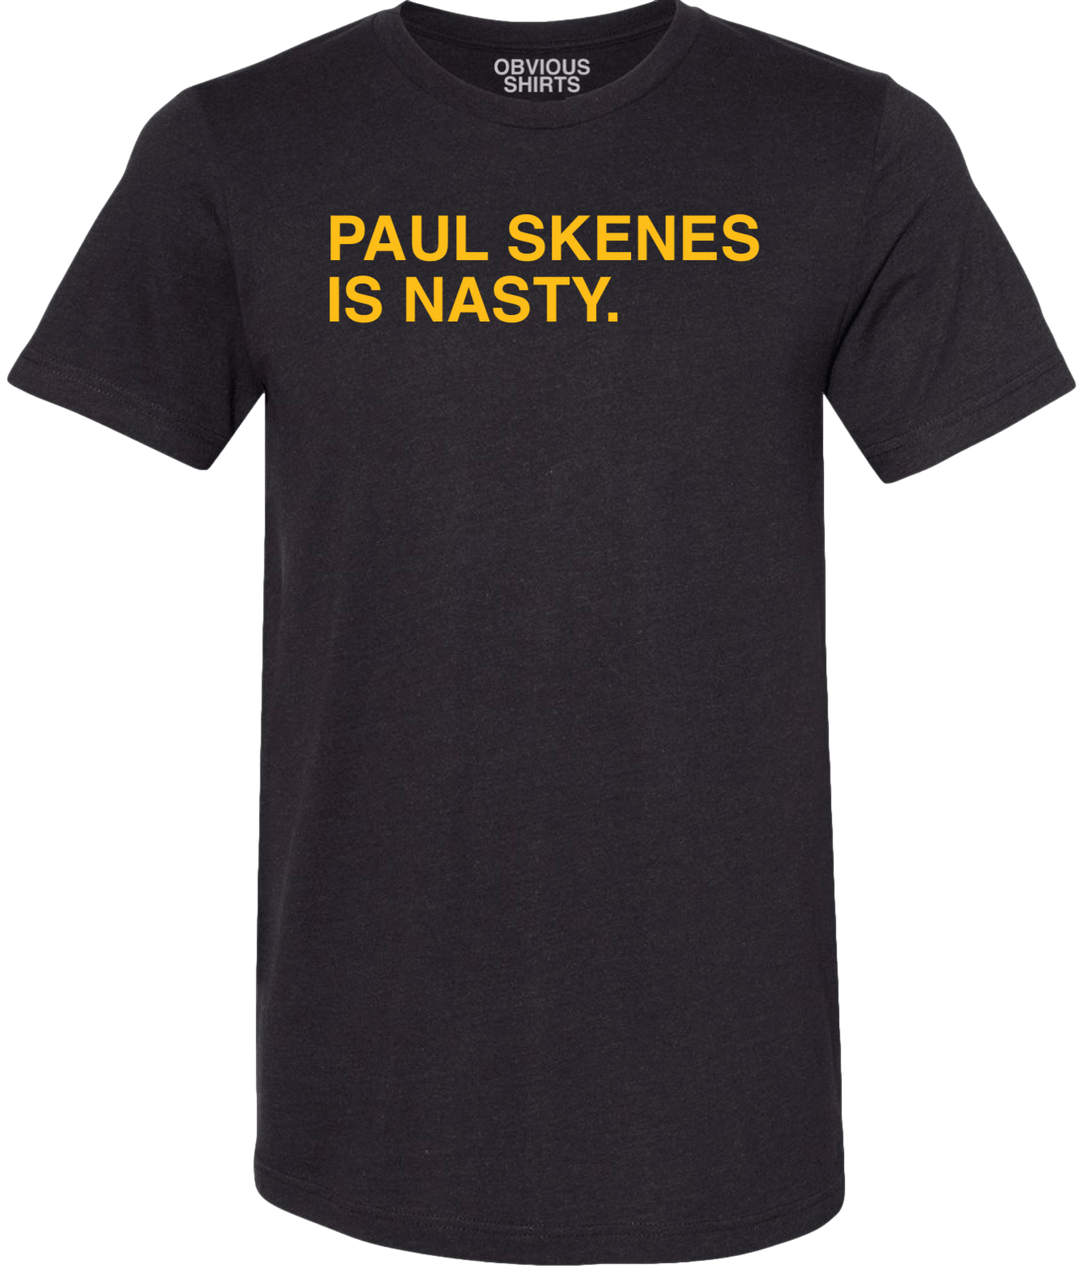 PAUL SKENES IS NASTY. - OBVIOUS SHIRTS